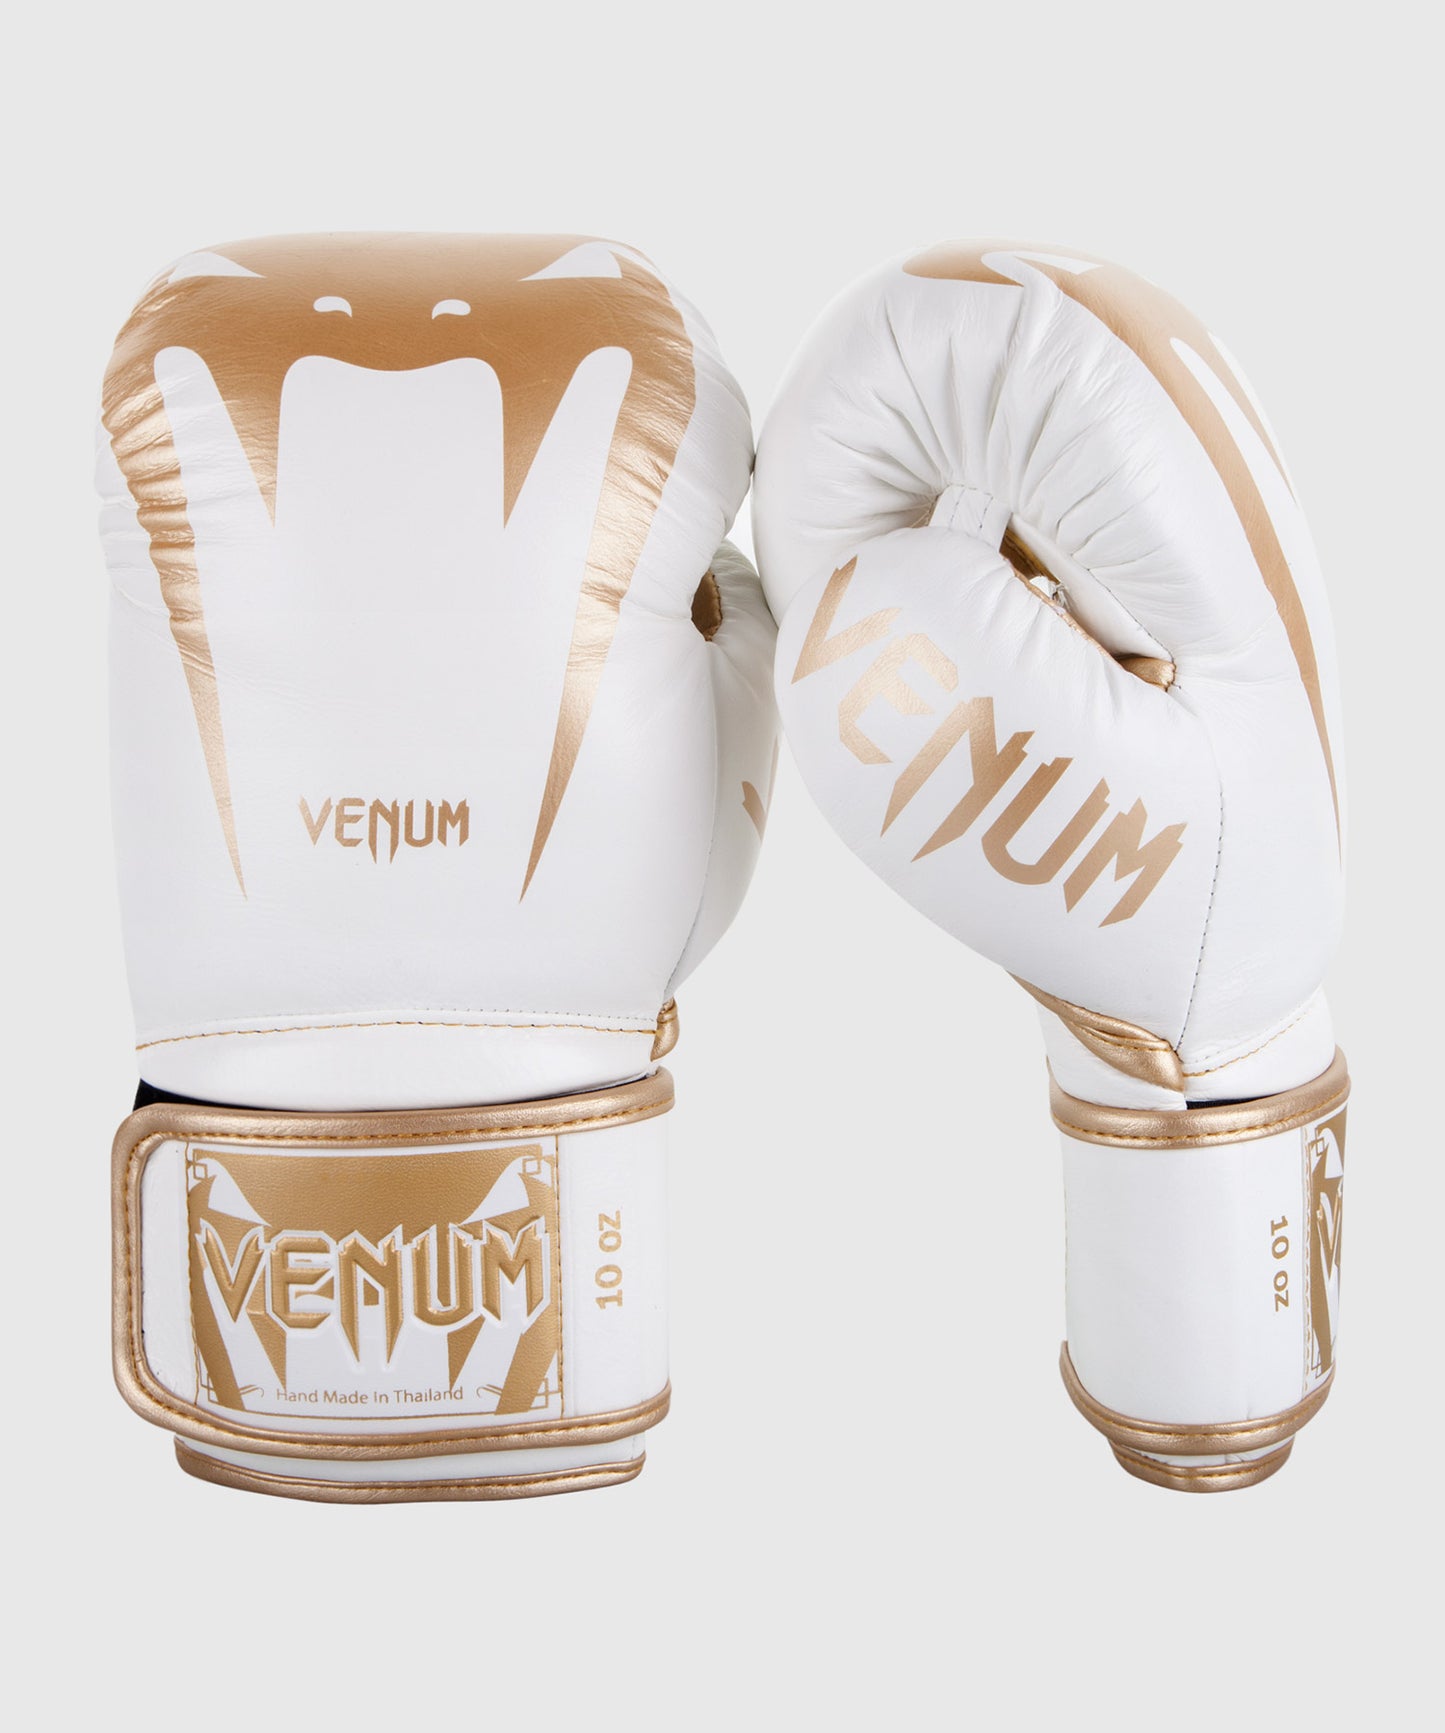 Venum Femme Giant 3.0 Gants de boxe, Noir / Blanc, 12 oz EU